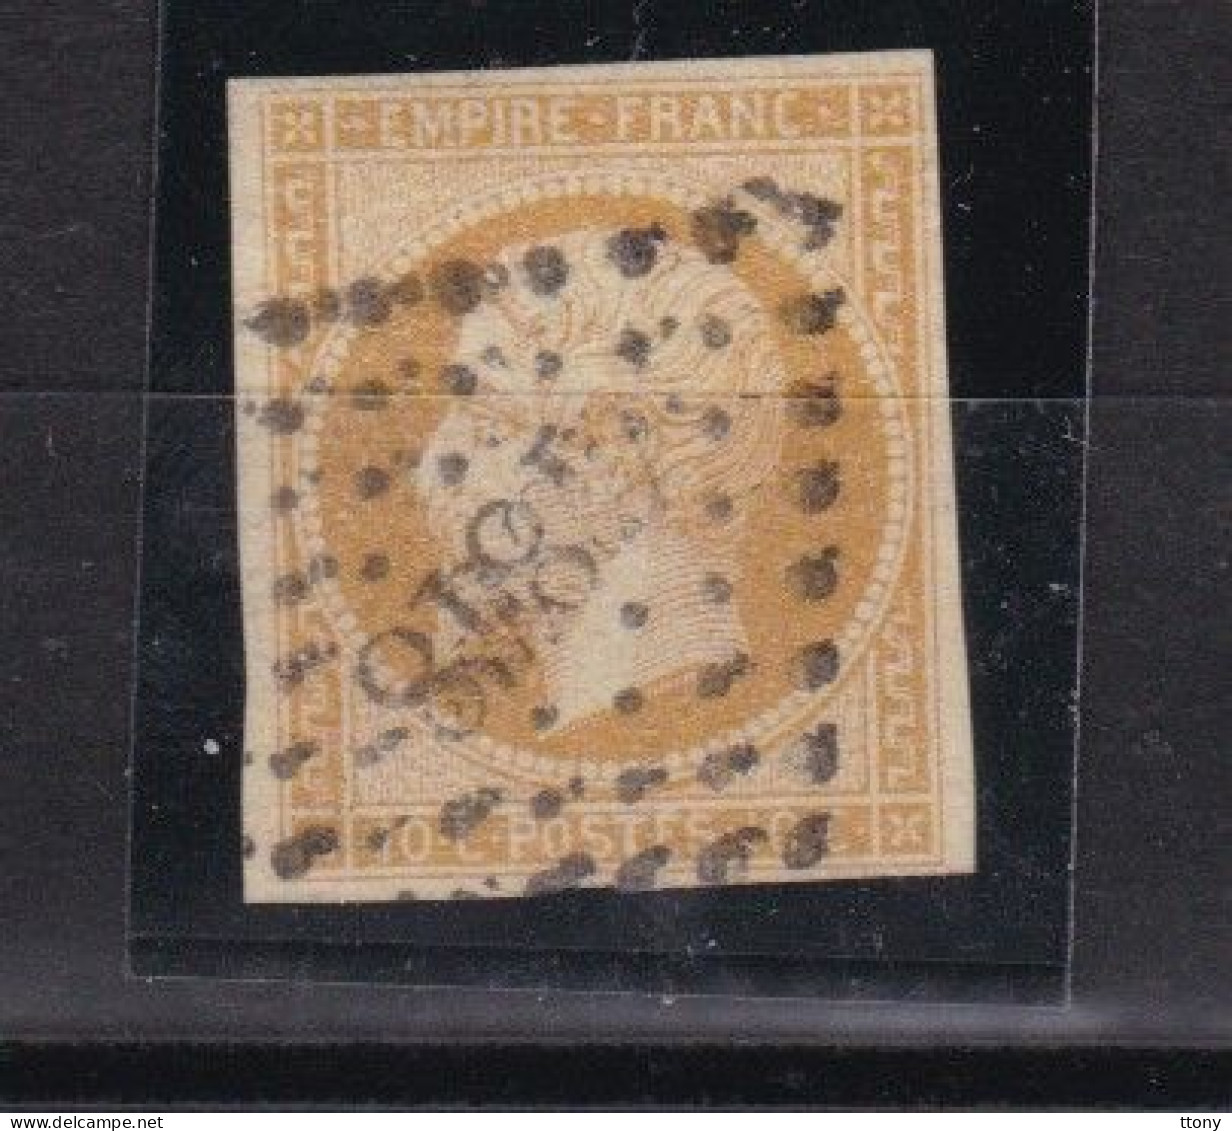 10  timbres oblitérés Napoléon III  dentelé et non dentelé  lauré  variété